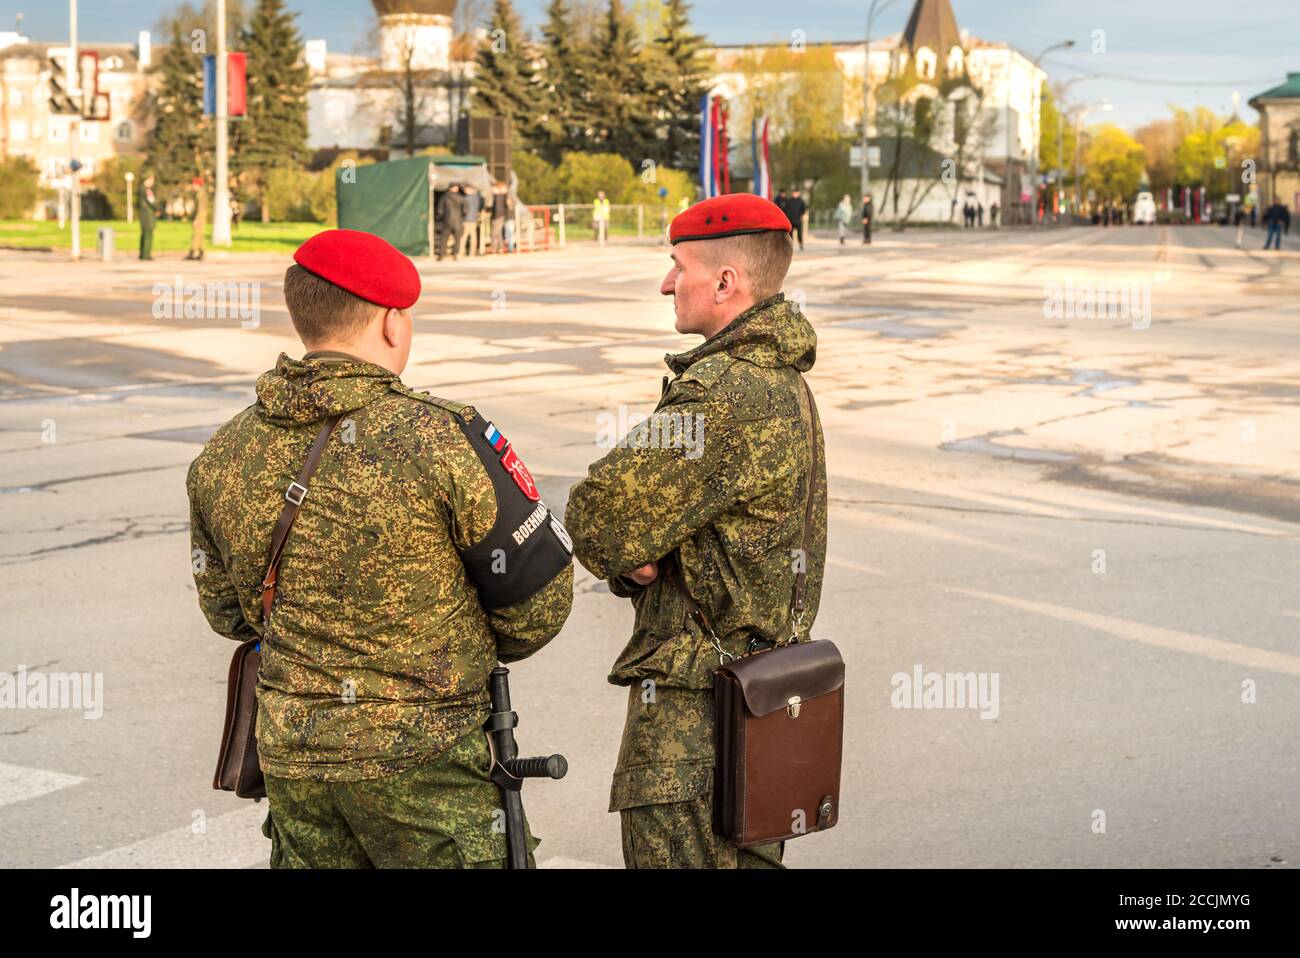 Pskov, Fédération de Russie - 4 mai 2018 : deux soldats de l'armée russe des forces spéciales avec des bérets rouges sur la place de Pskov, Russie Banque D'Images